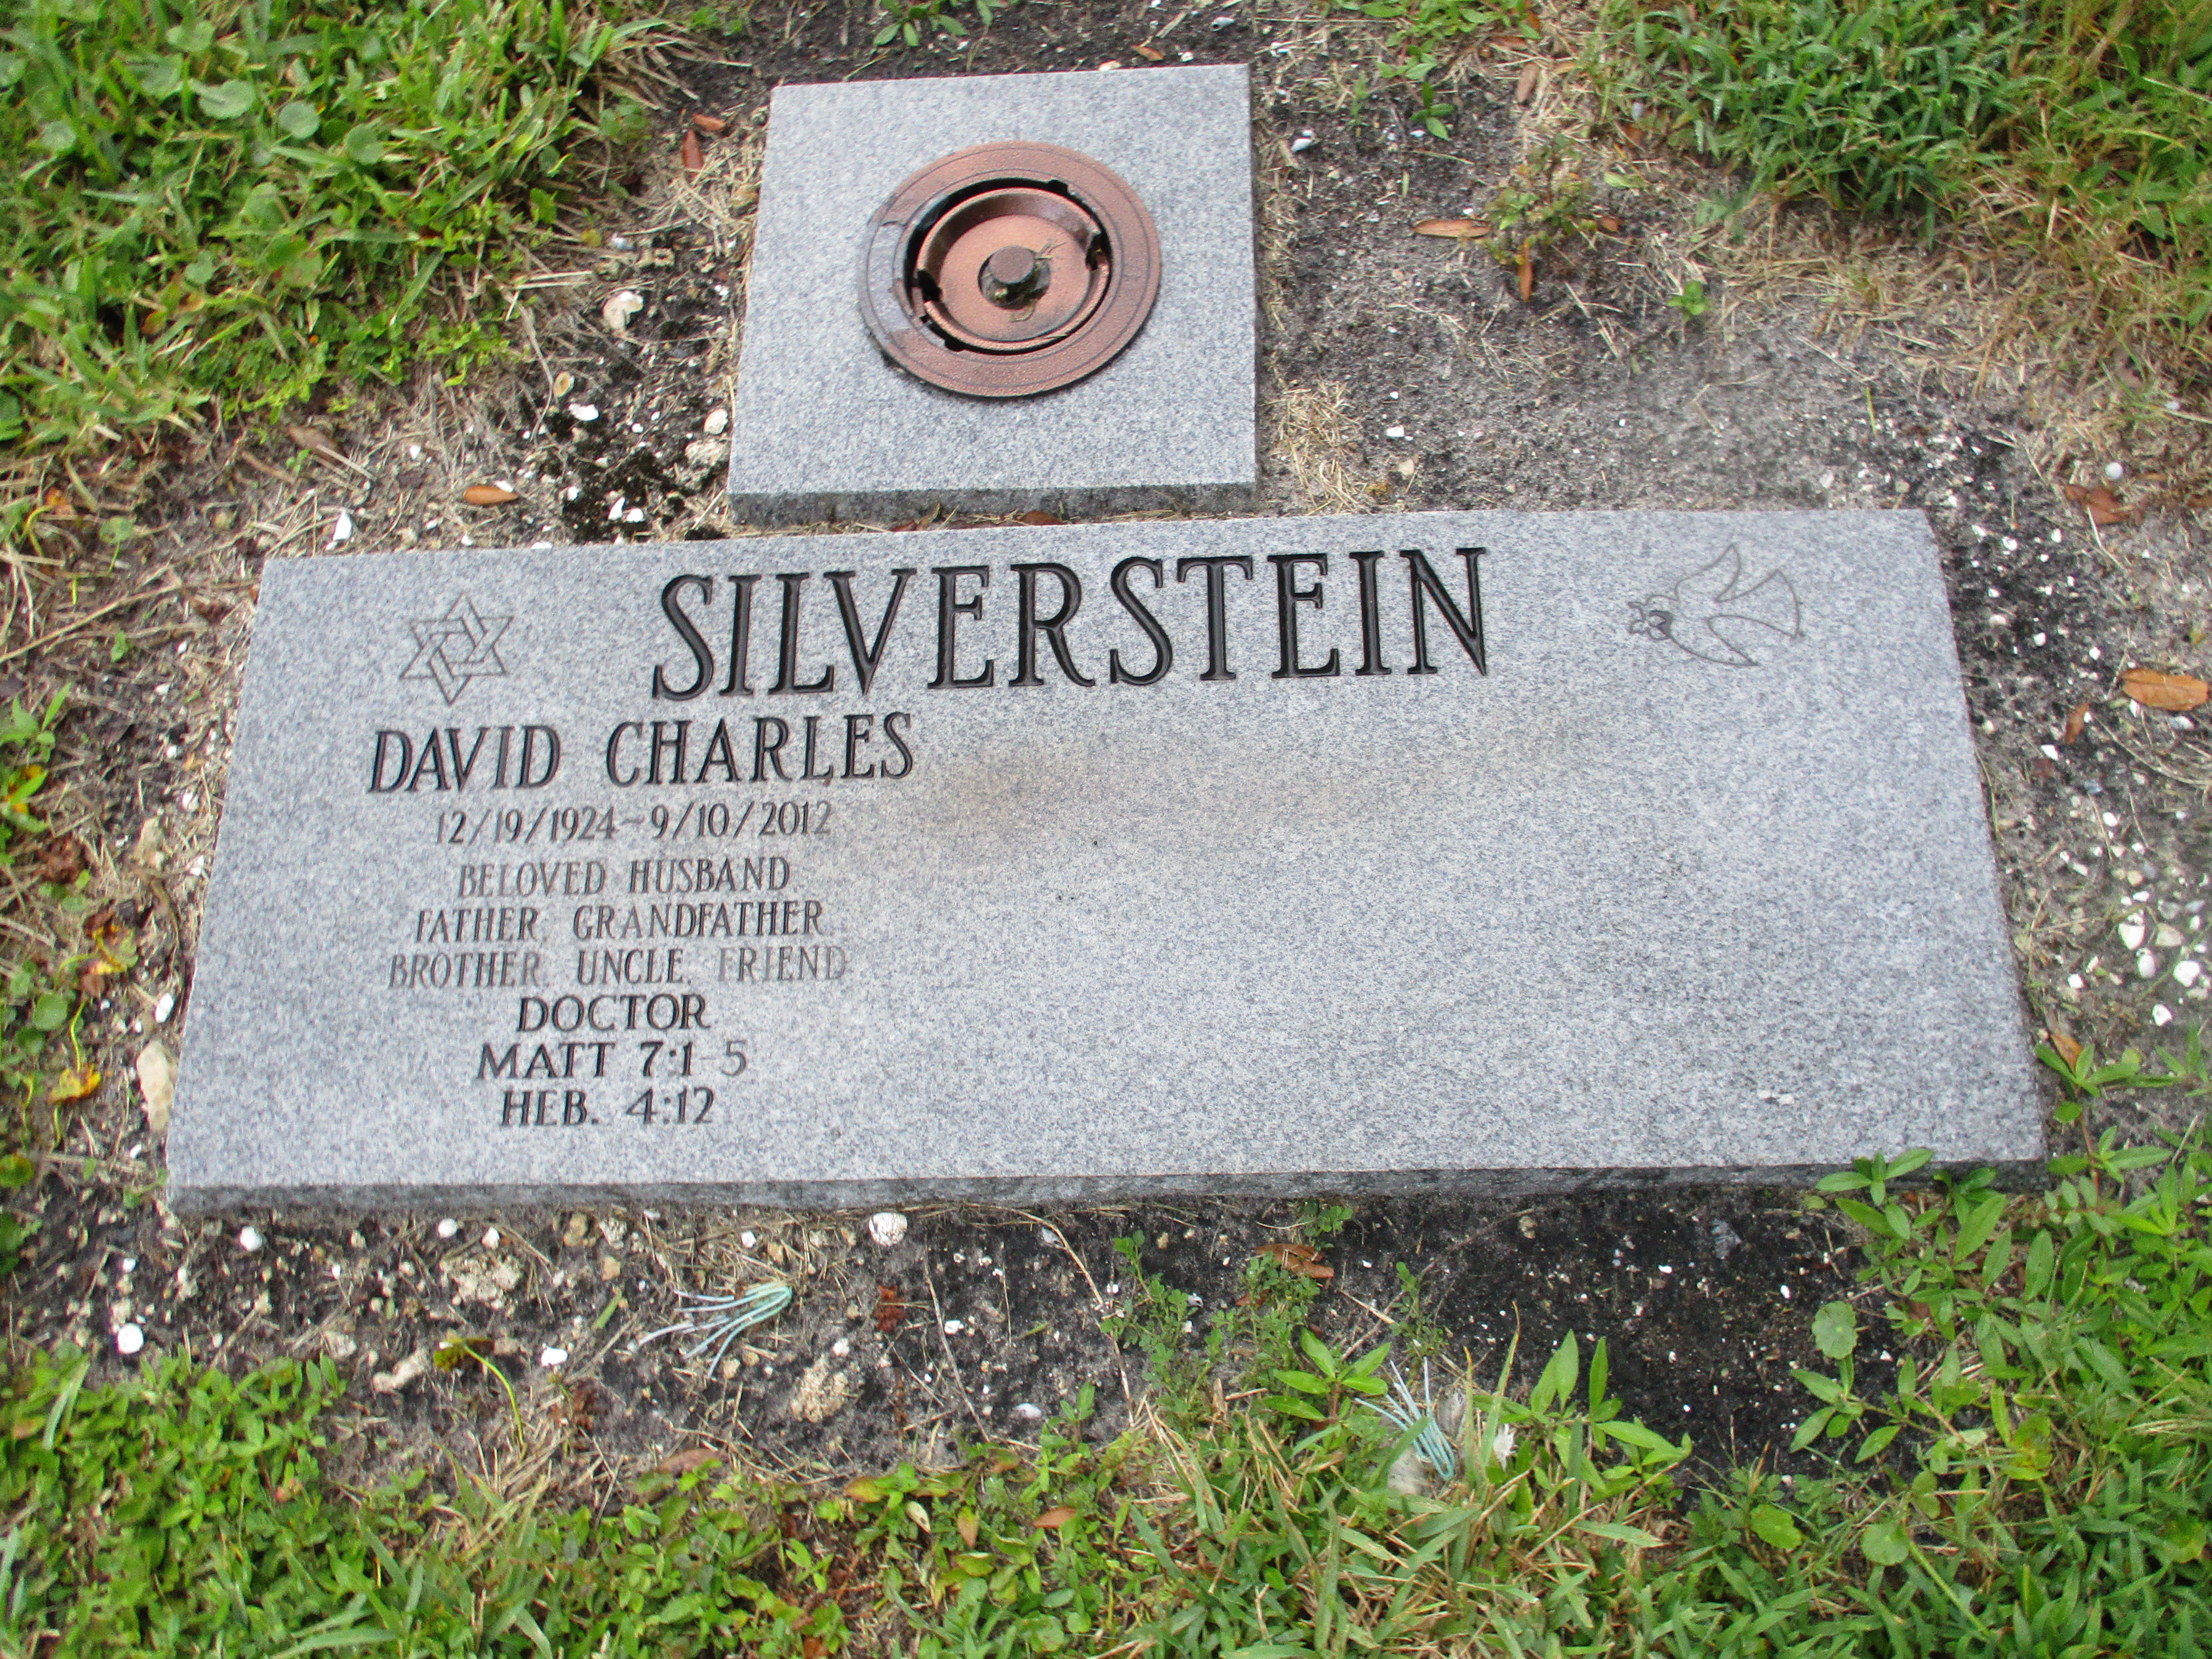 David Charles Silverstein